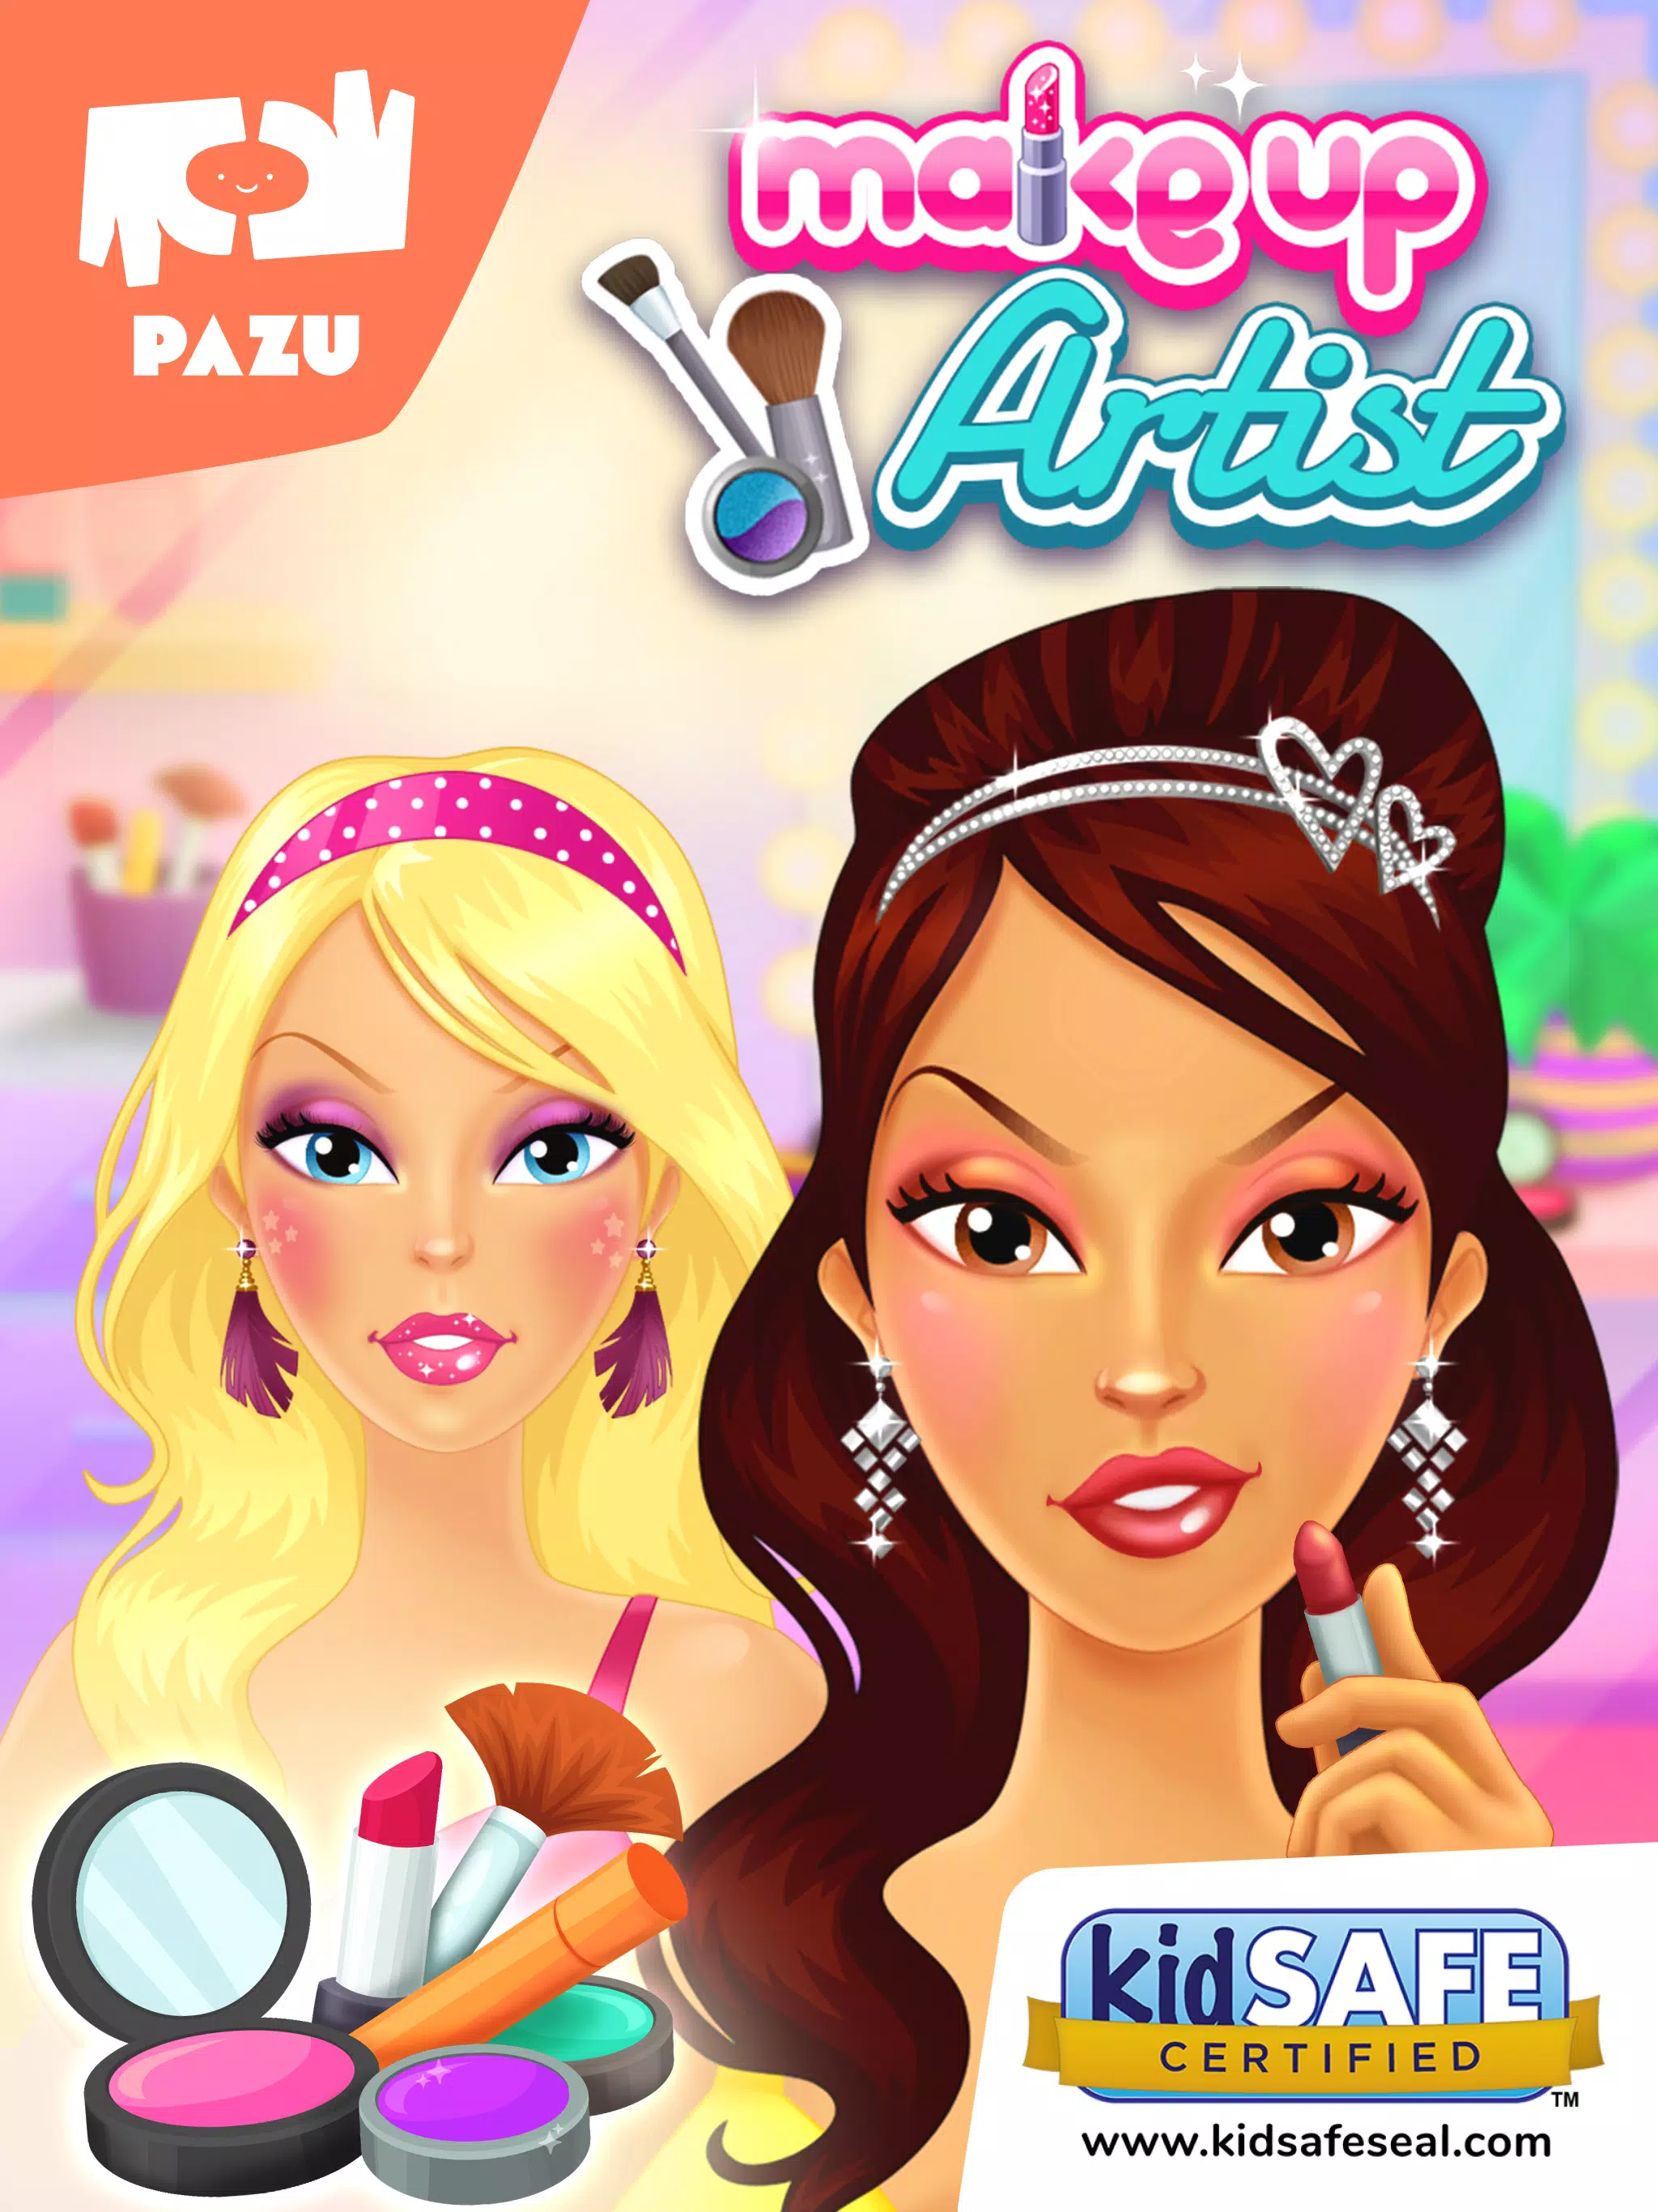 Jogos vestir meninas maquiagem APK (Android Game) - Baixar Grátis